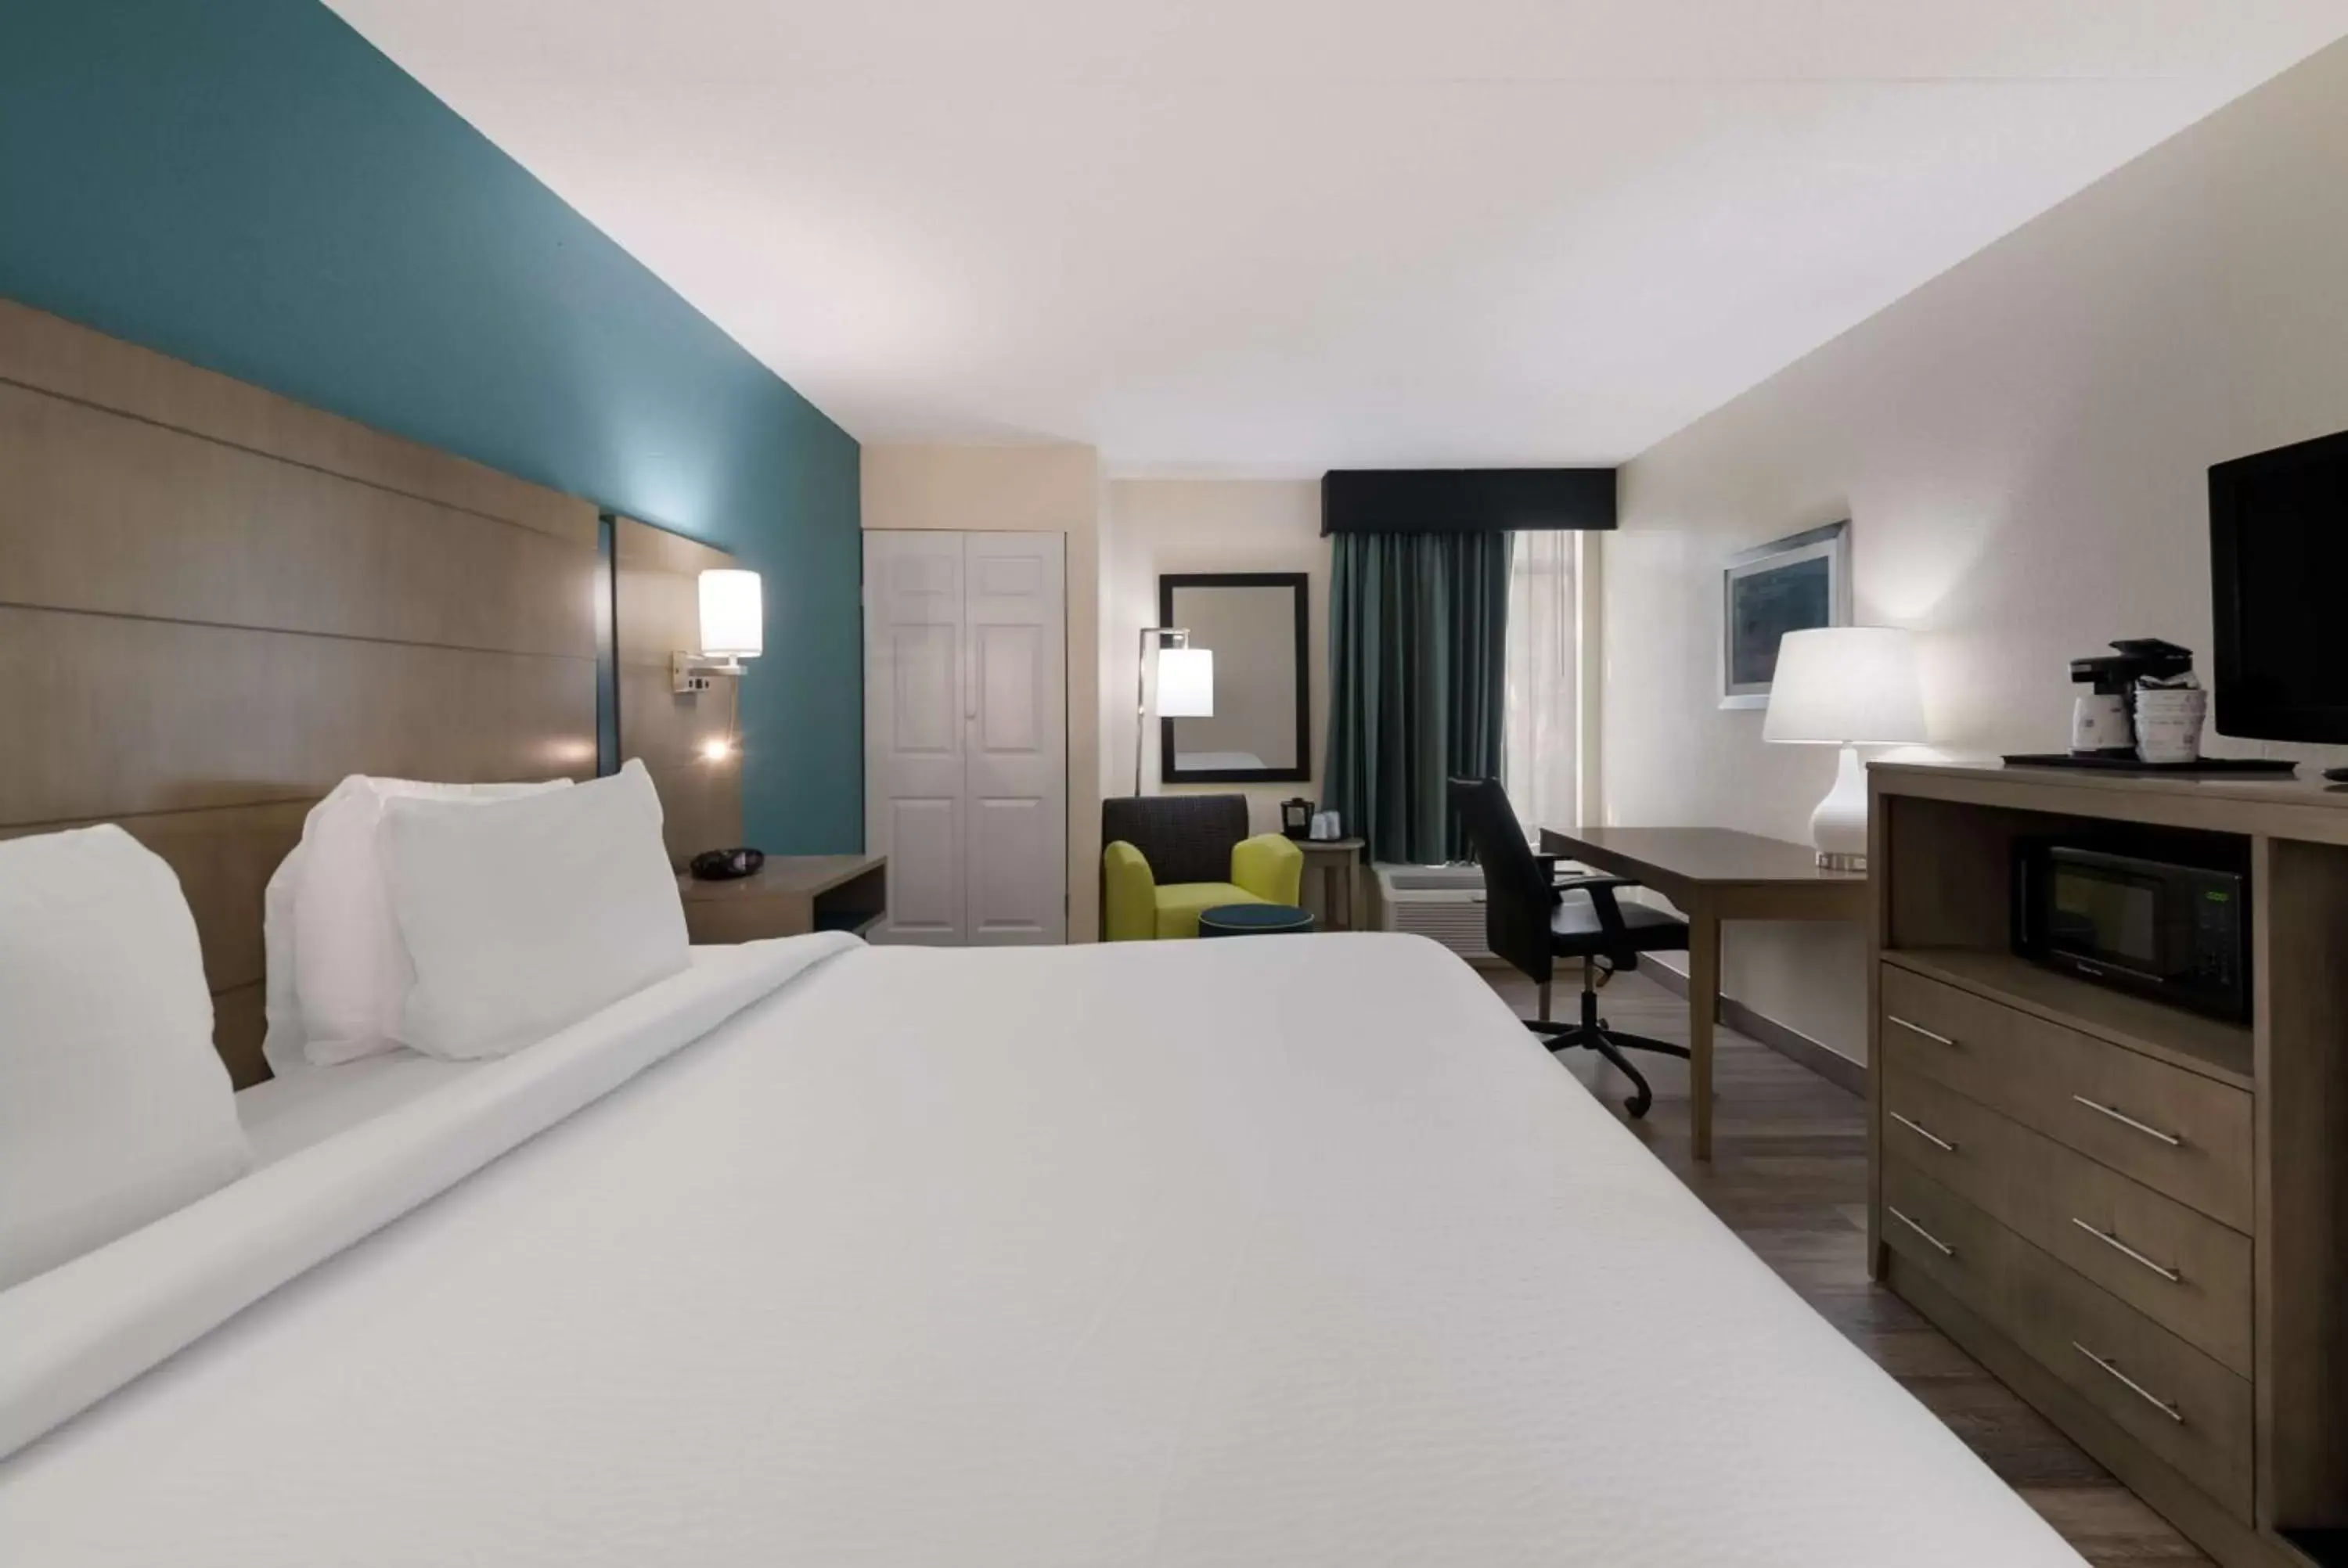 Bedroom, Bed in Best Western Hampton Coliseum Inn